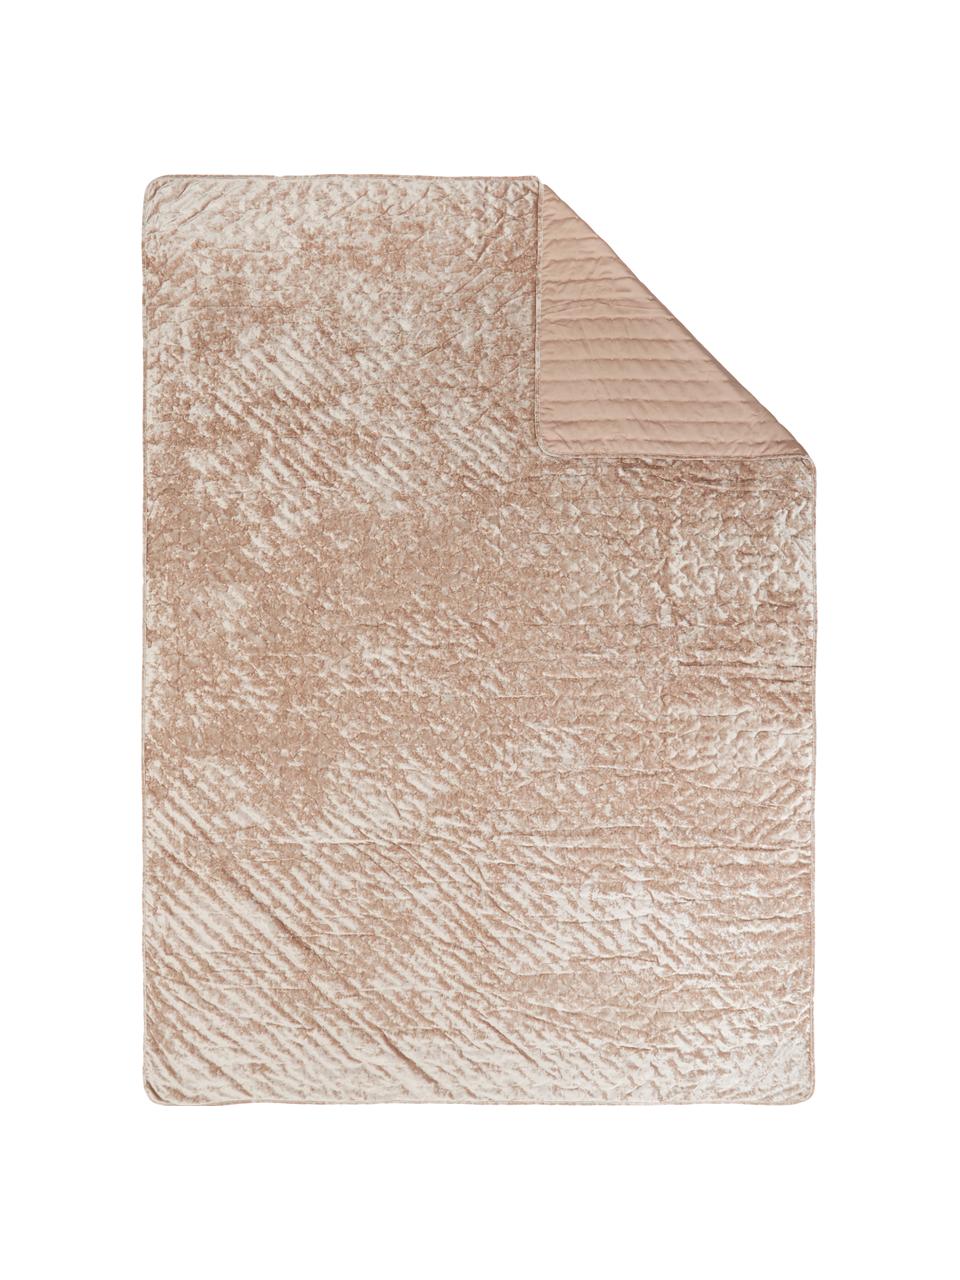 Fluwelen bedsprei Enid in beige, Fluweel (100% polyester)
Oeko-Tex Standaard 100, Klasse 1, Beige, roze, B 180 x L 250 cm (voor bedden tot 140 x 200)